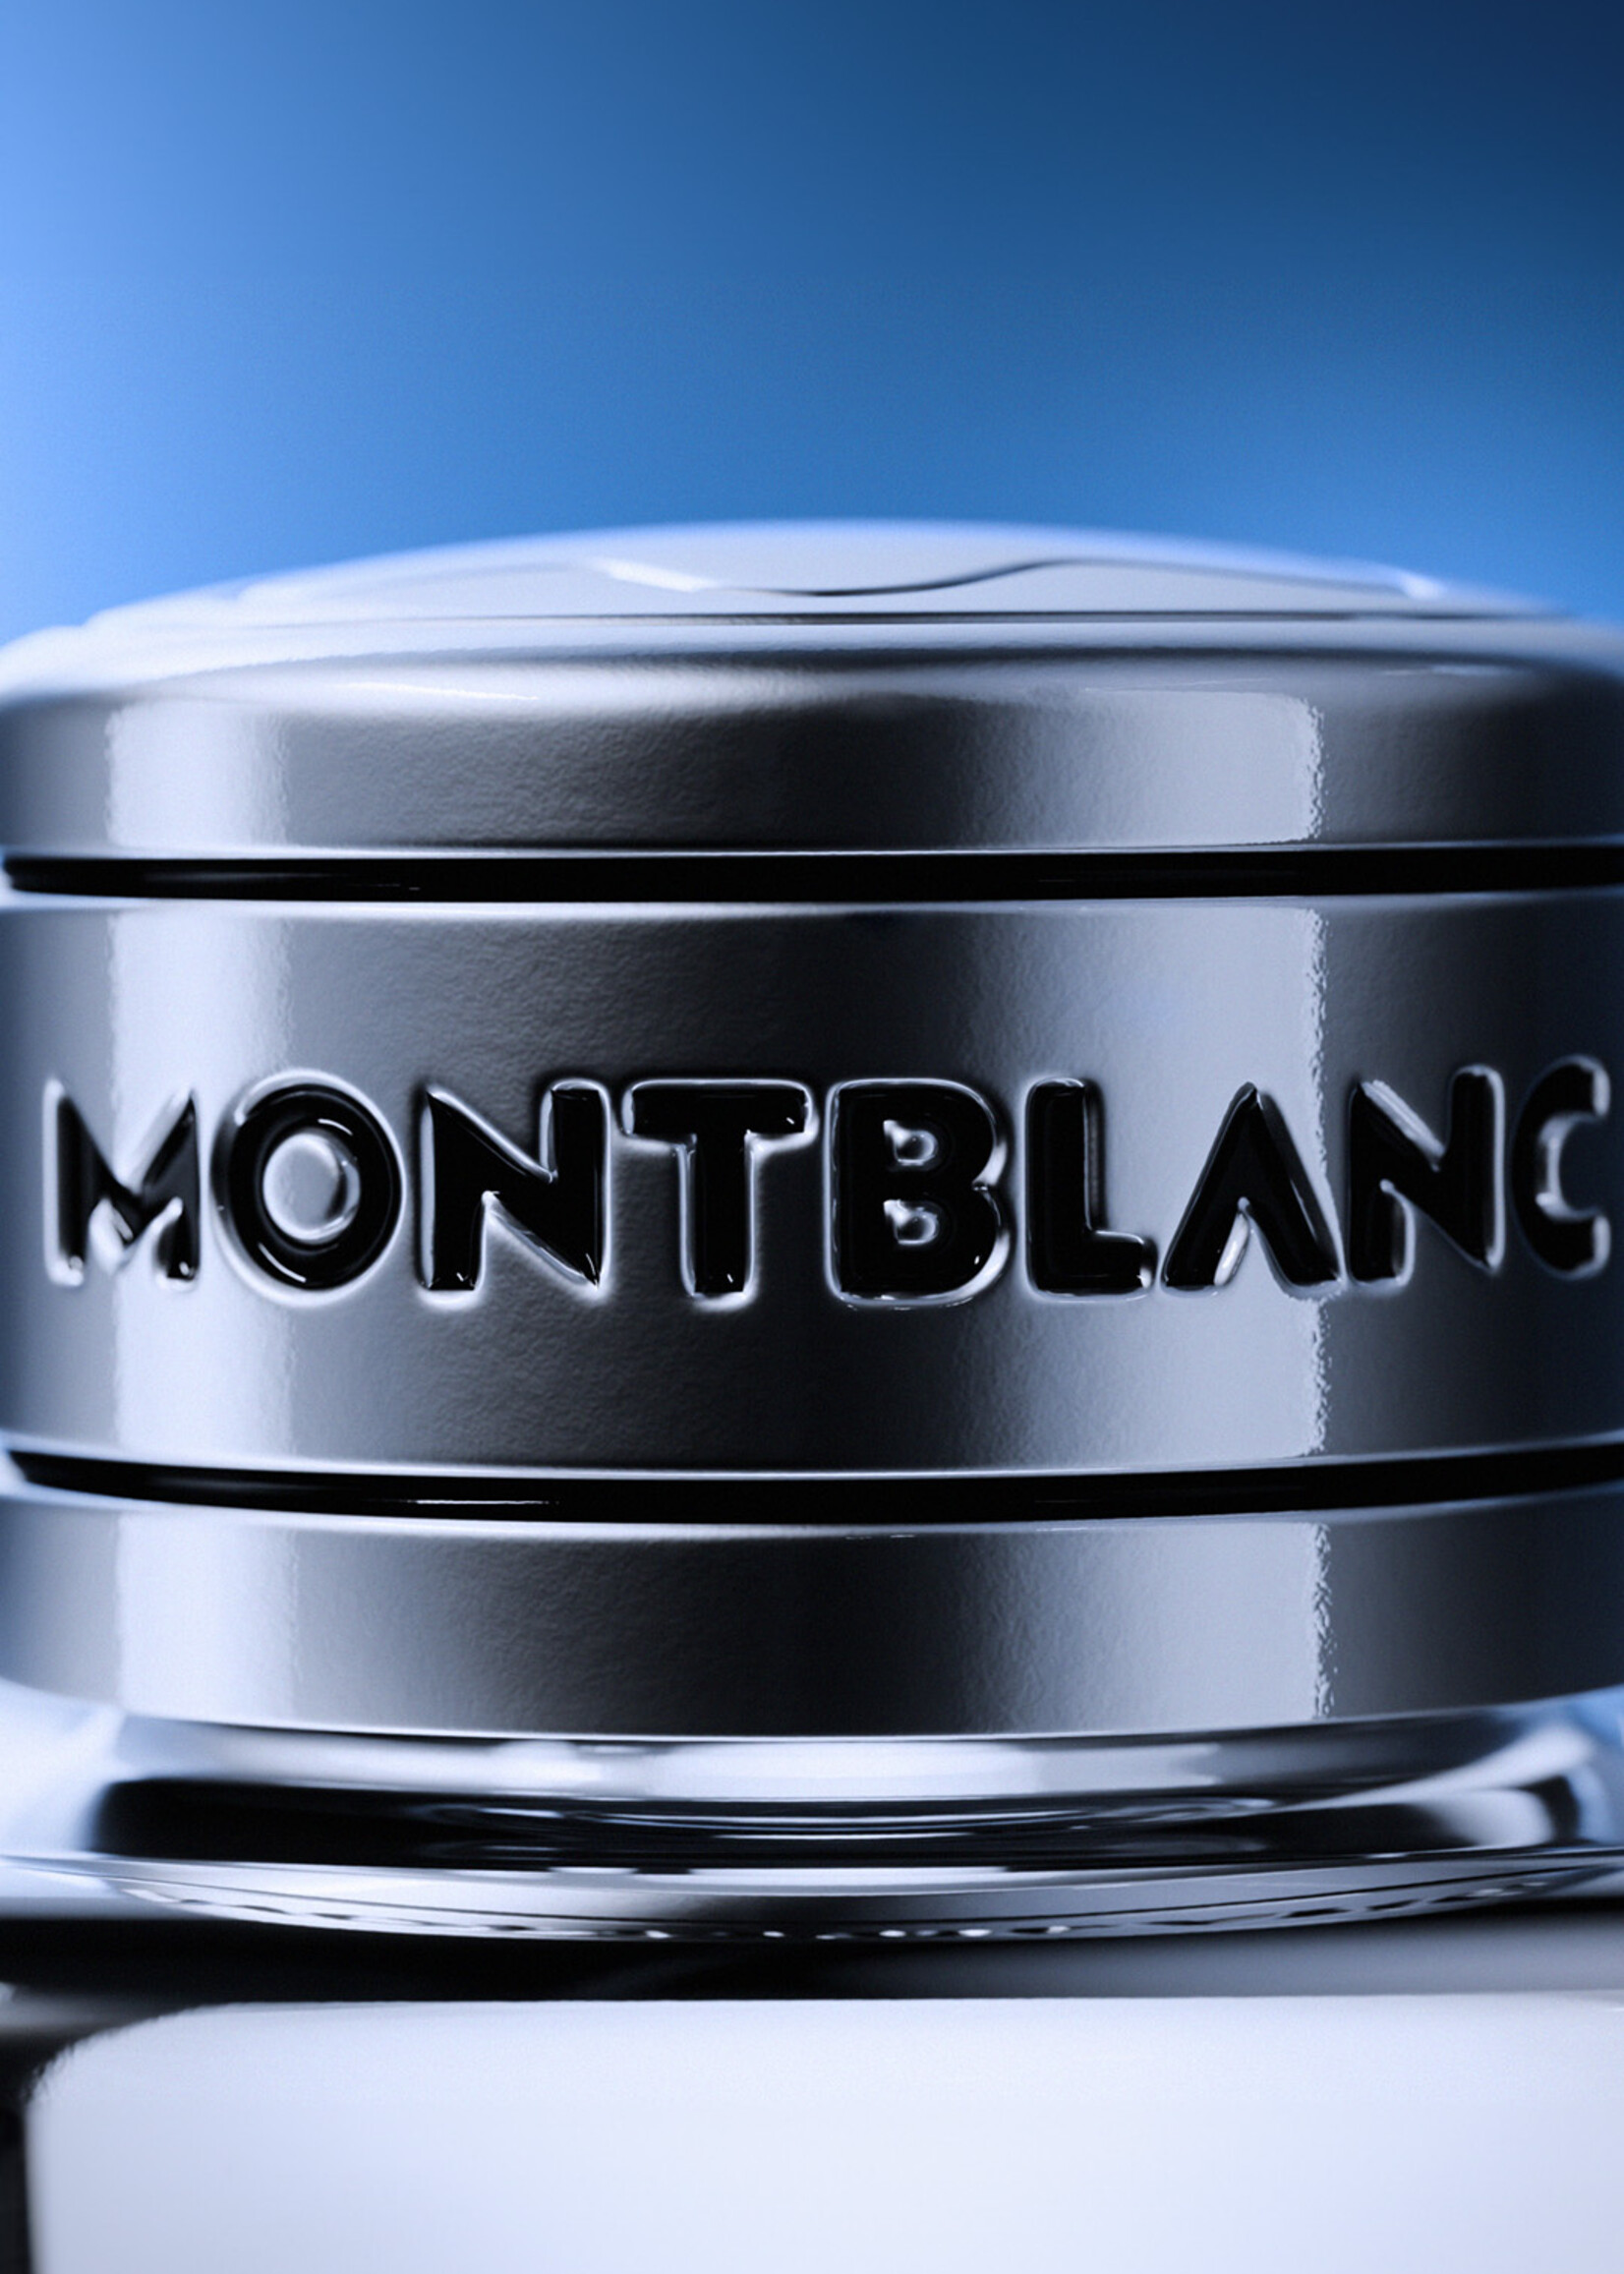 MONTBLANC Legend Blue Eau de Parfum 50ml